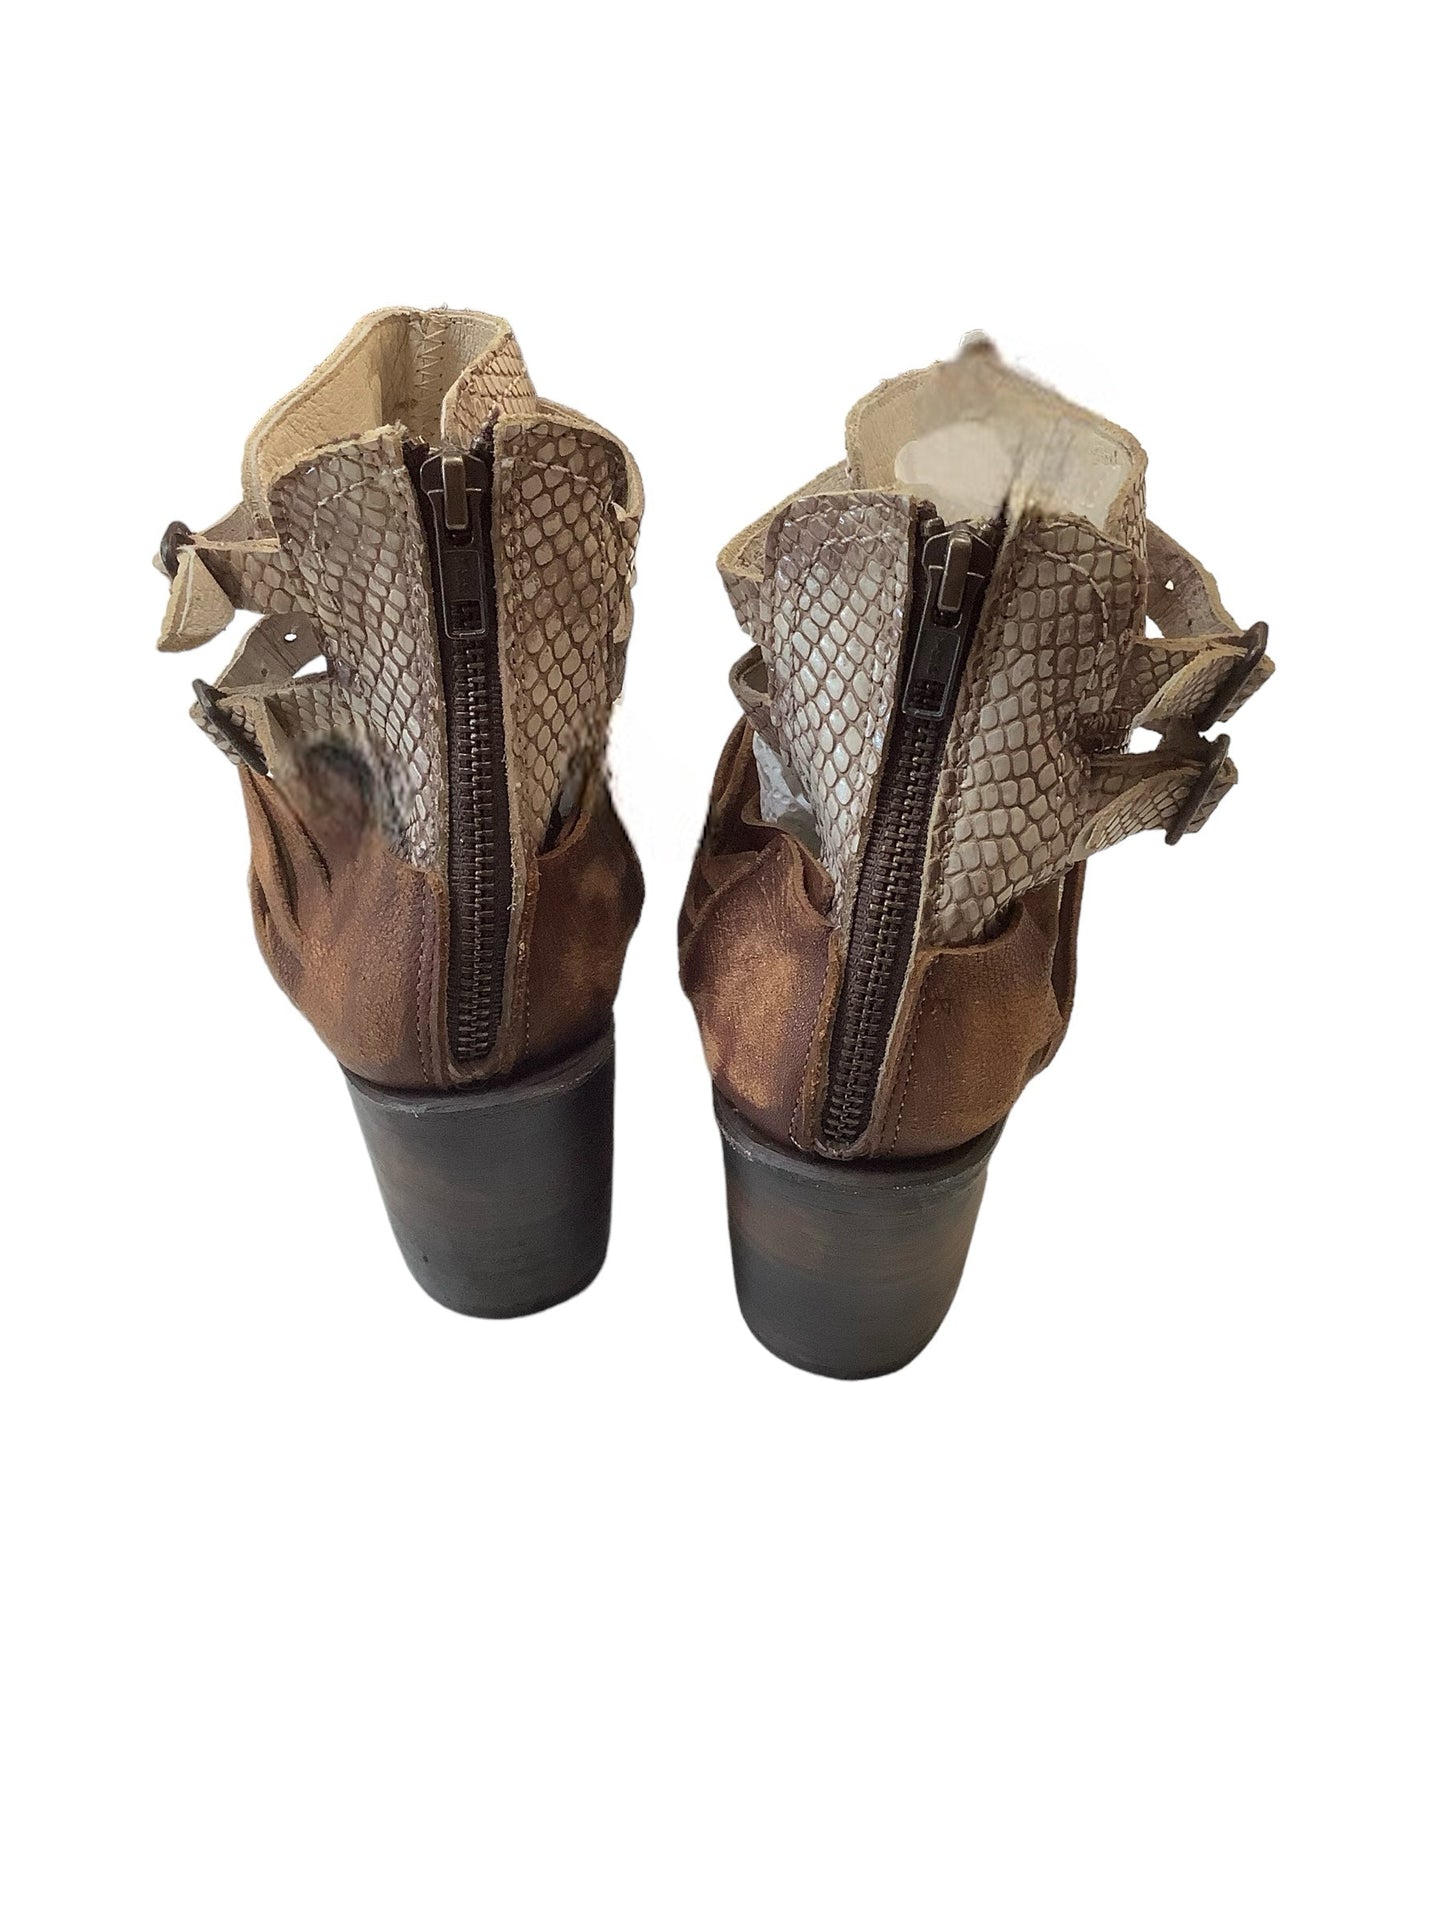 Brown Sandals Heels Block Freebird, Size 8